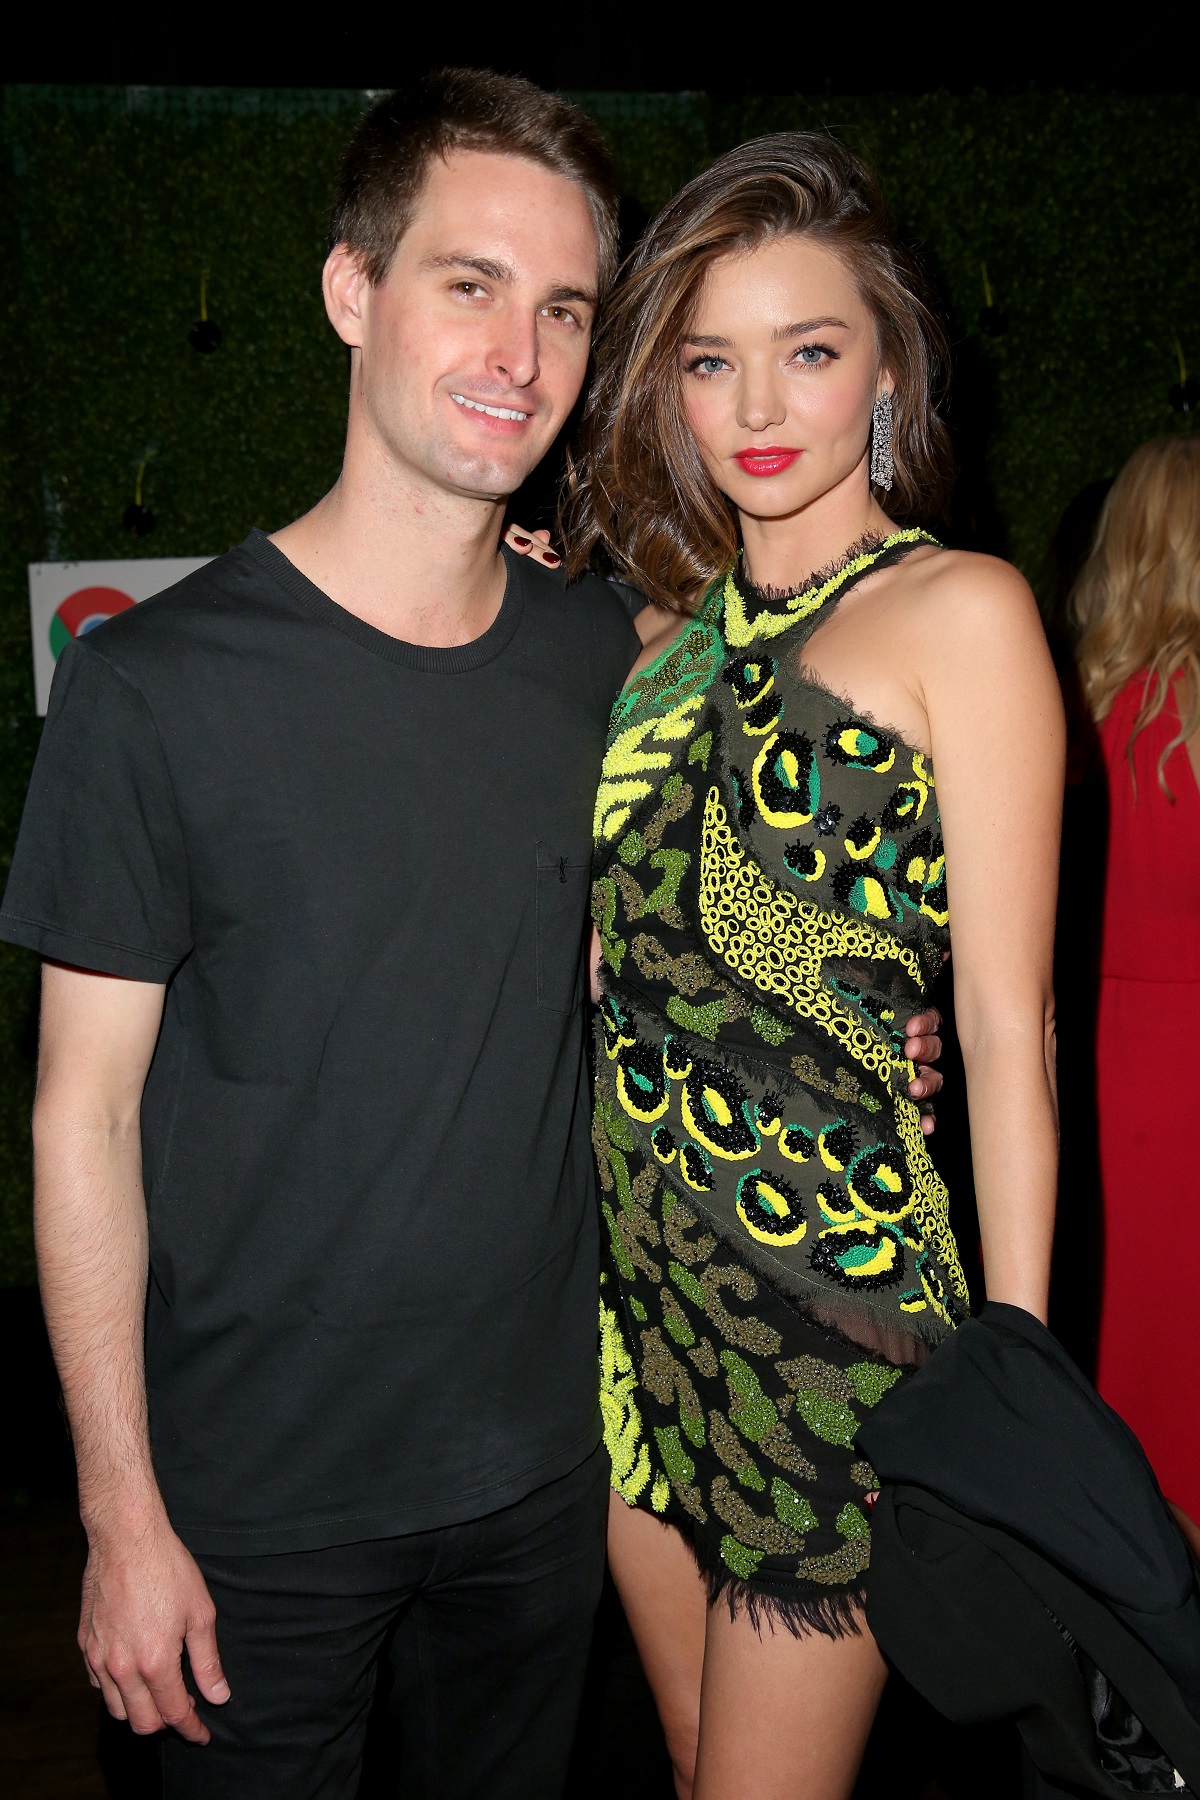 Miranda Kerr îmbrăcată într-o rochie verde cu paiete alături de soțul ei Evan Spiege la un eveniment public numit Republic Records Grammy în timp ce zâmbesc la cameră